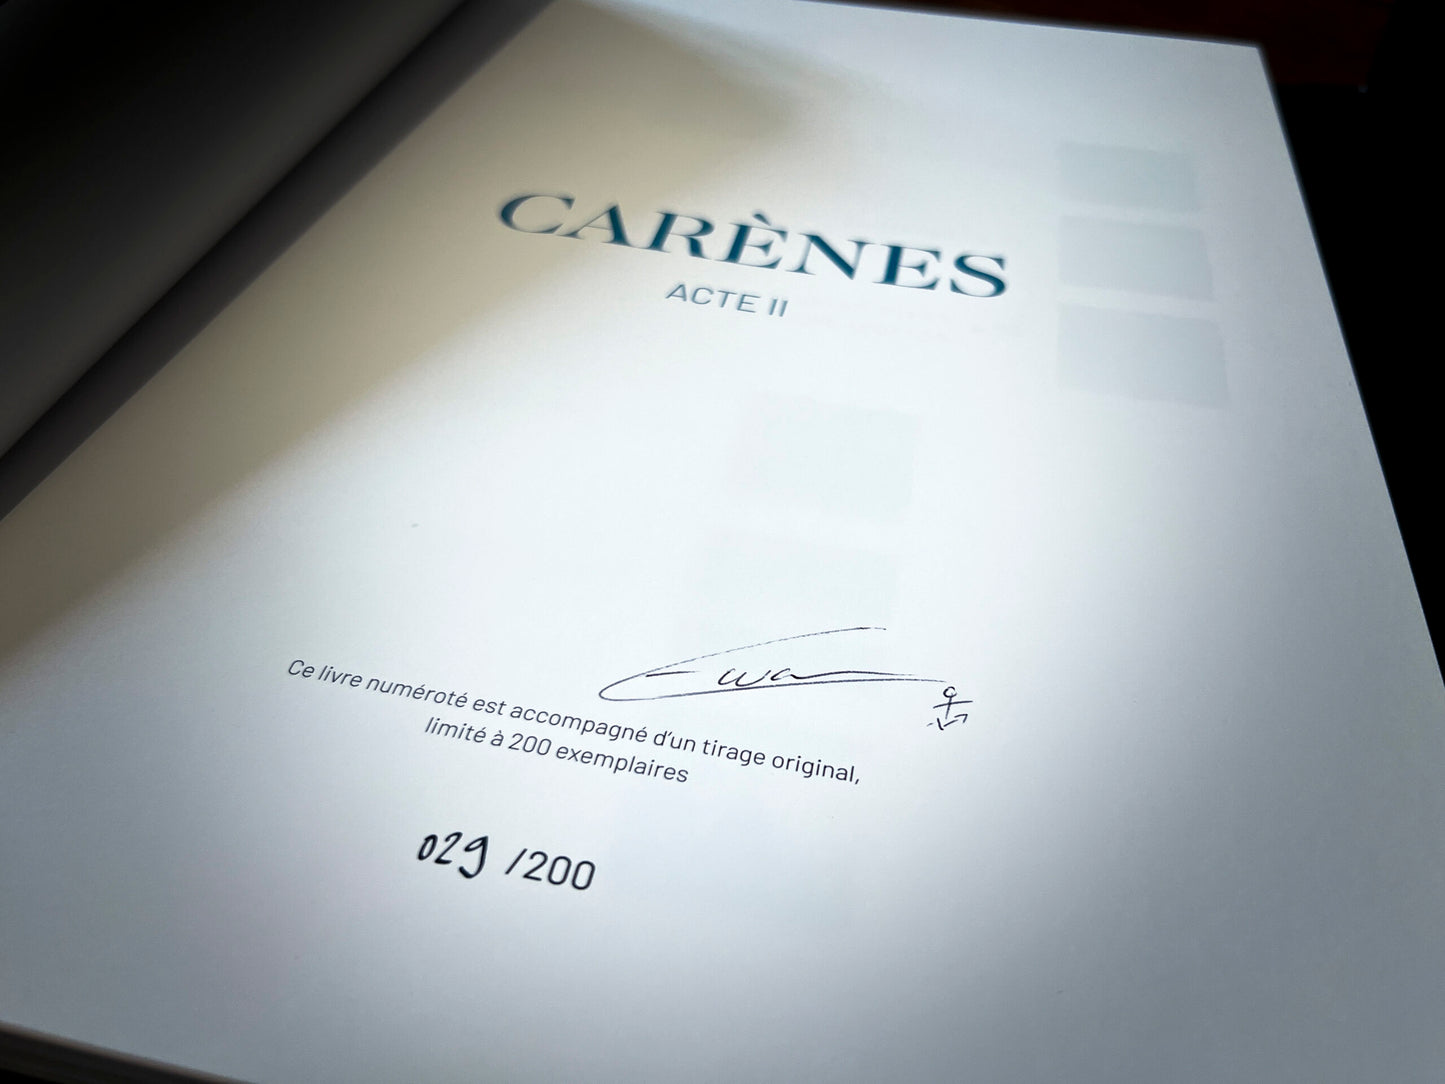 CARENES ACTE II - COFFRET PREMIUM